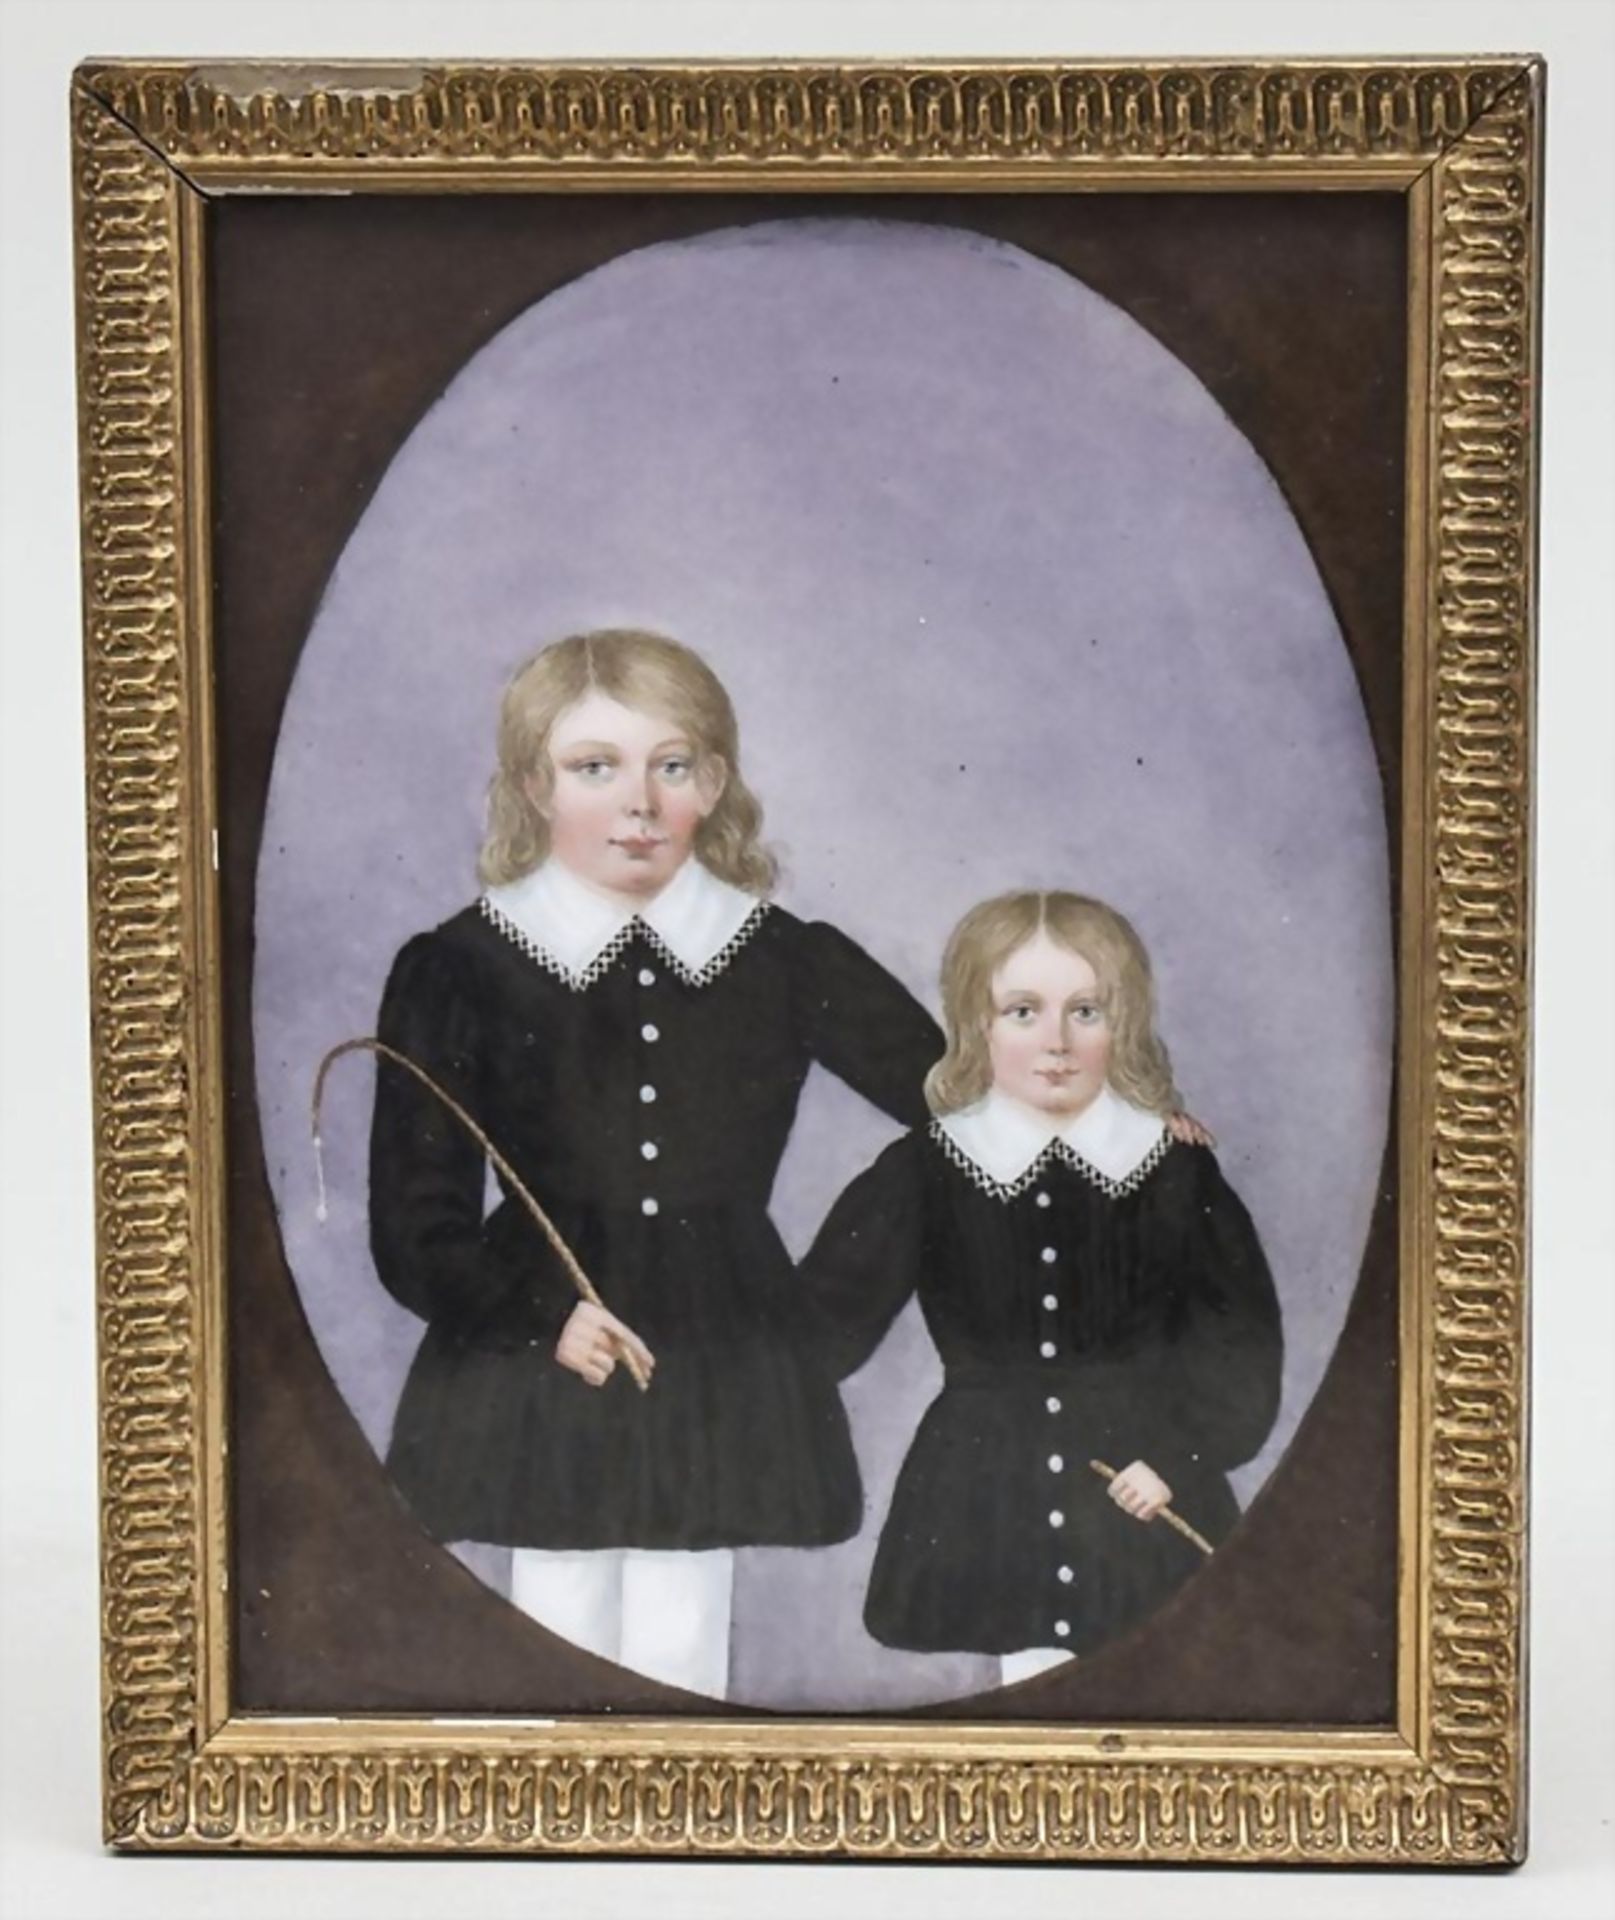 Porträts zweier Kinder / Porcelain Miniature Of 2 Children, 19. Jh.